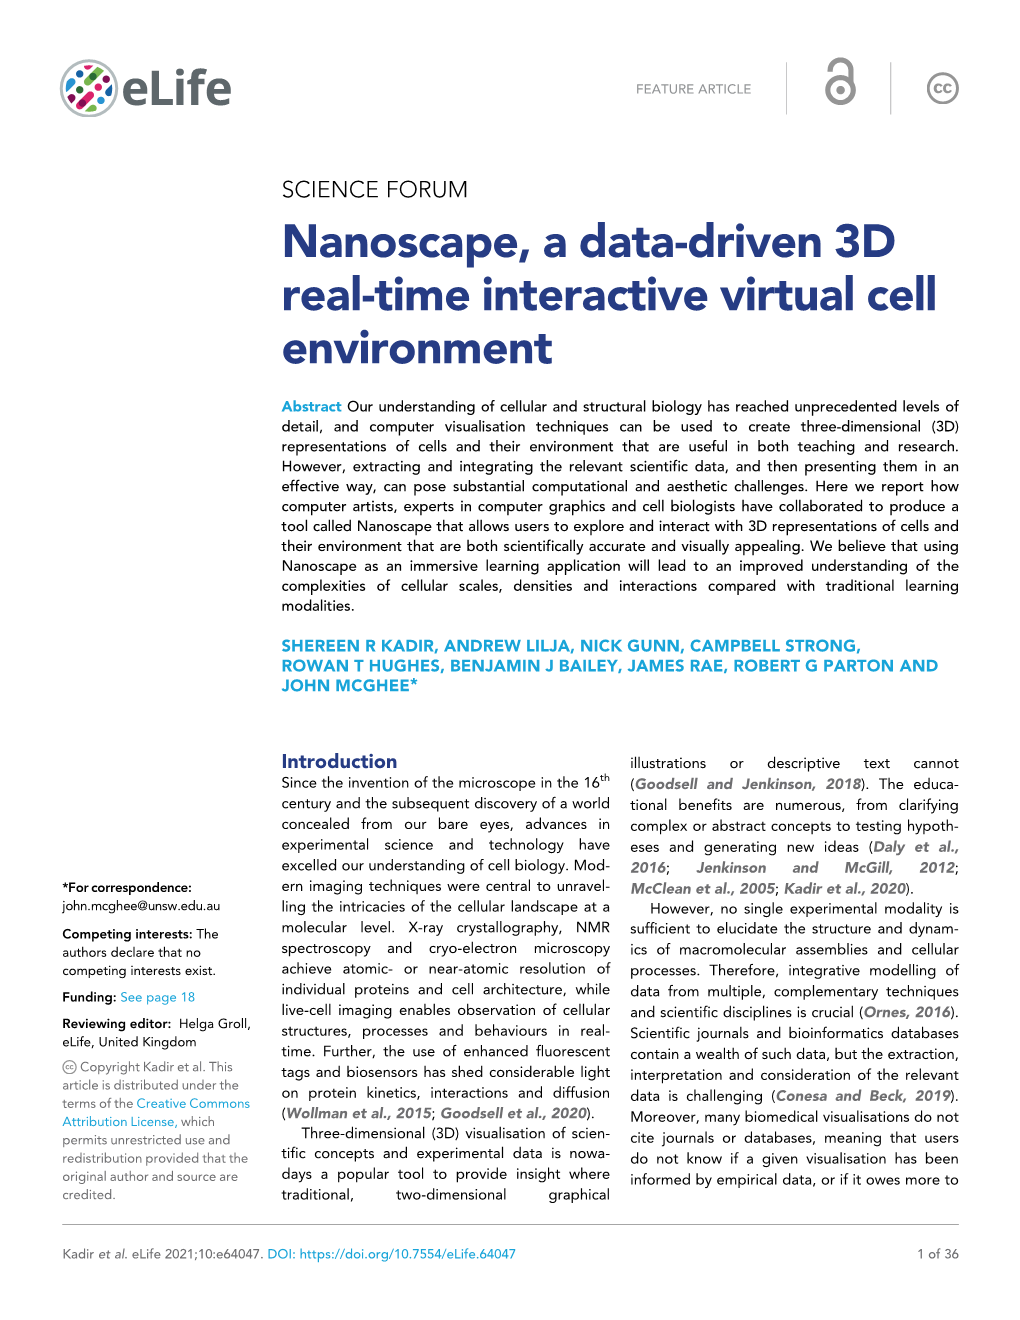 Nanoscape, a Data-Driven 3D Real-Time Interactive Virtual Cell Environment